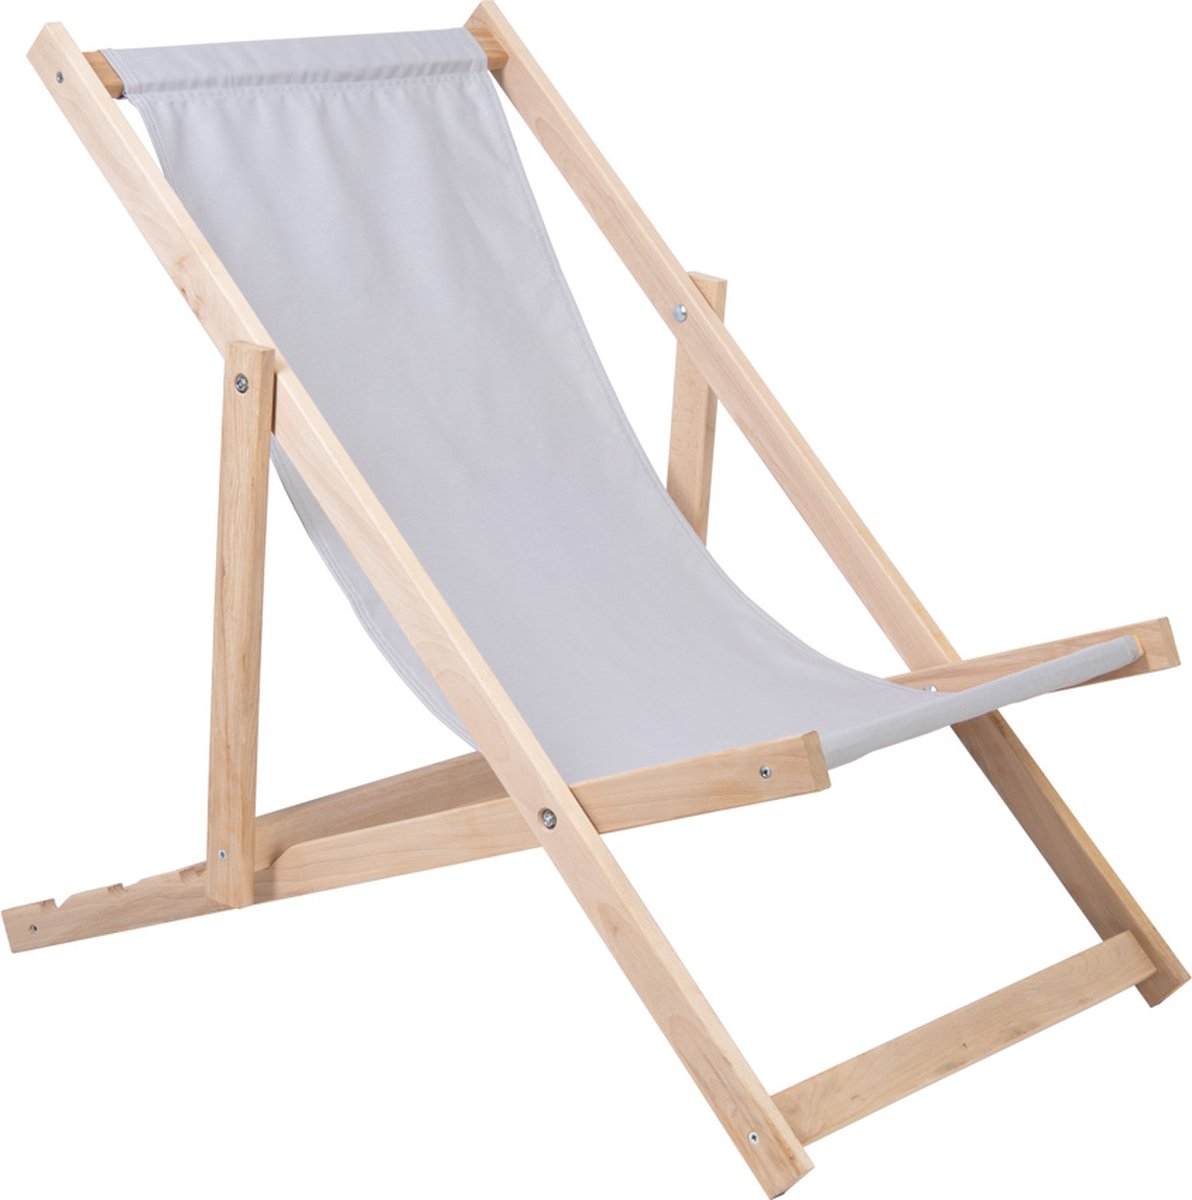 Holtaz Strandstoel Hout Inklapbaar Comfortabele Zonnebed Ligbed met verstelbare Lighoogte - grijs